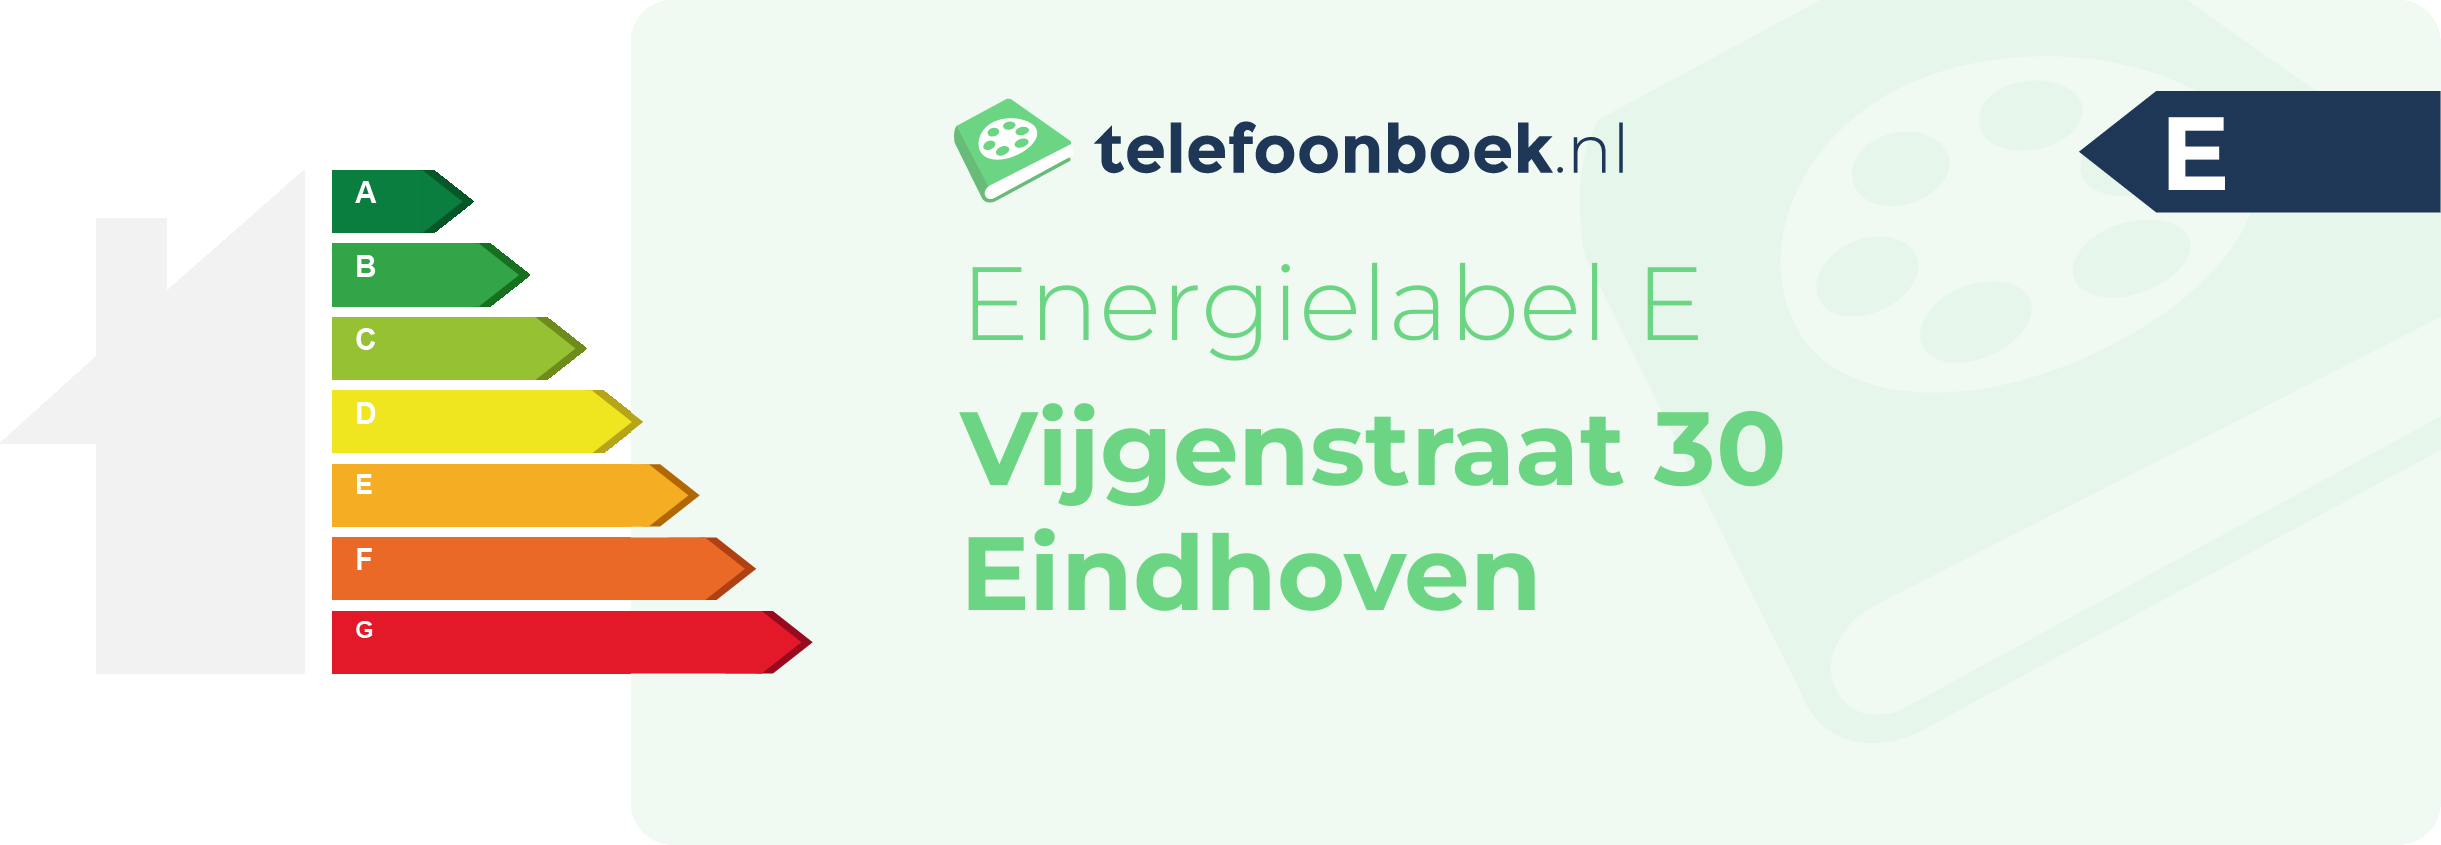 Energielabel Vijgenstraat 30 Eindhoven